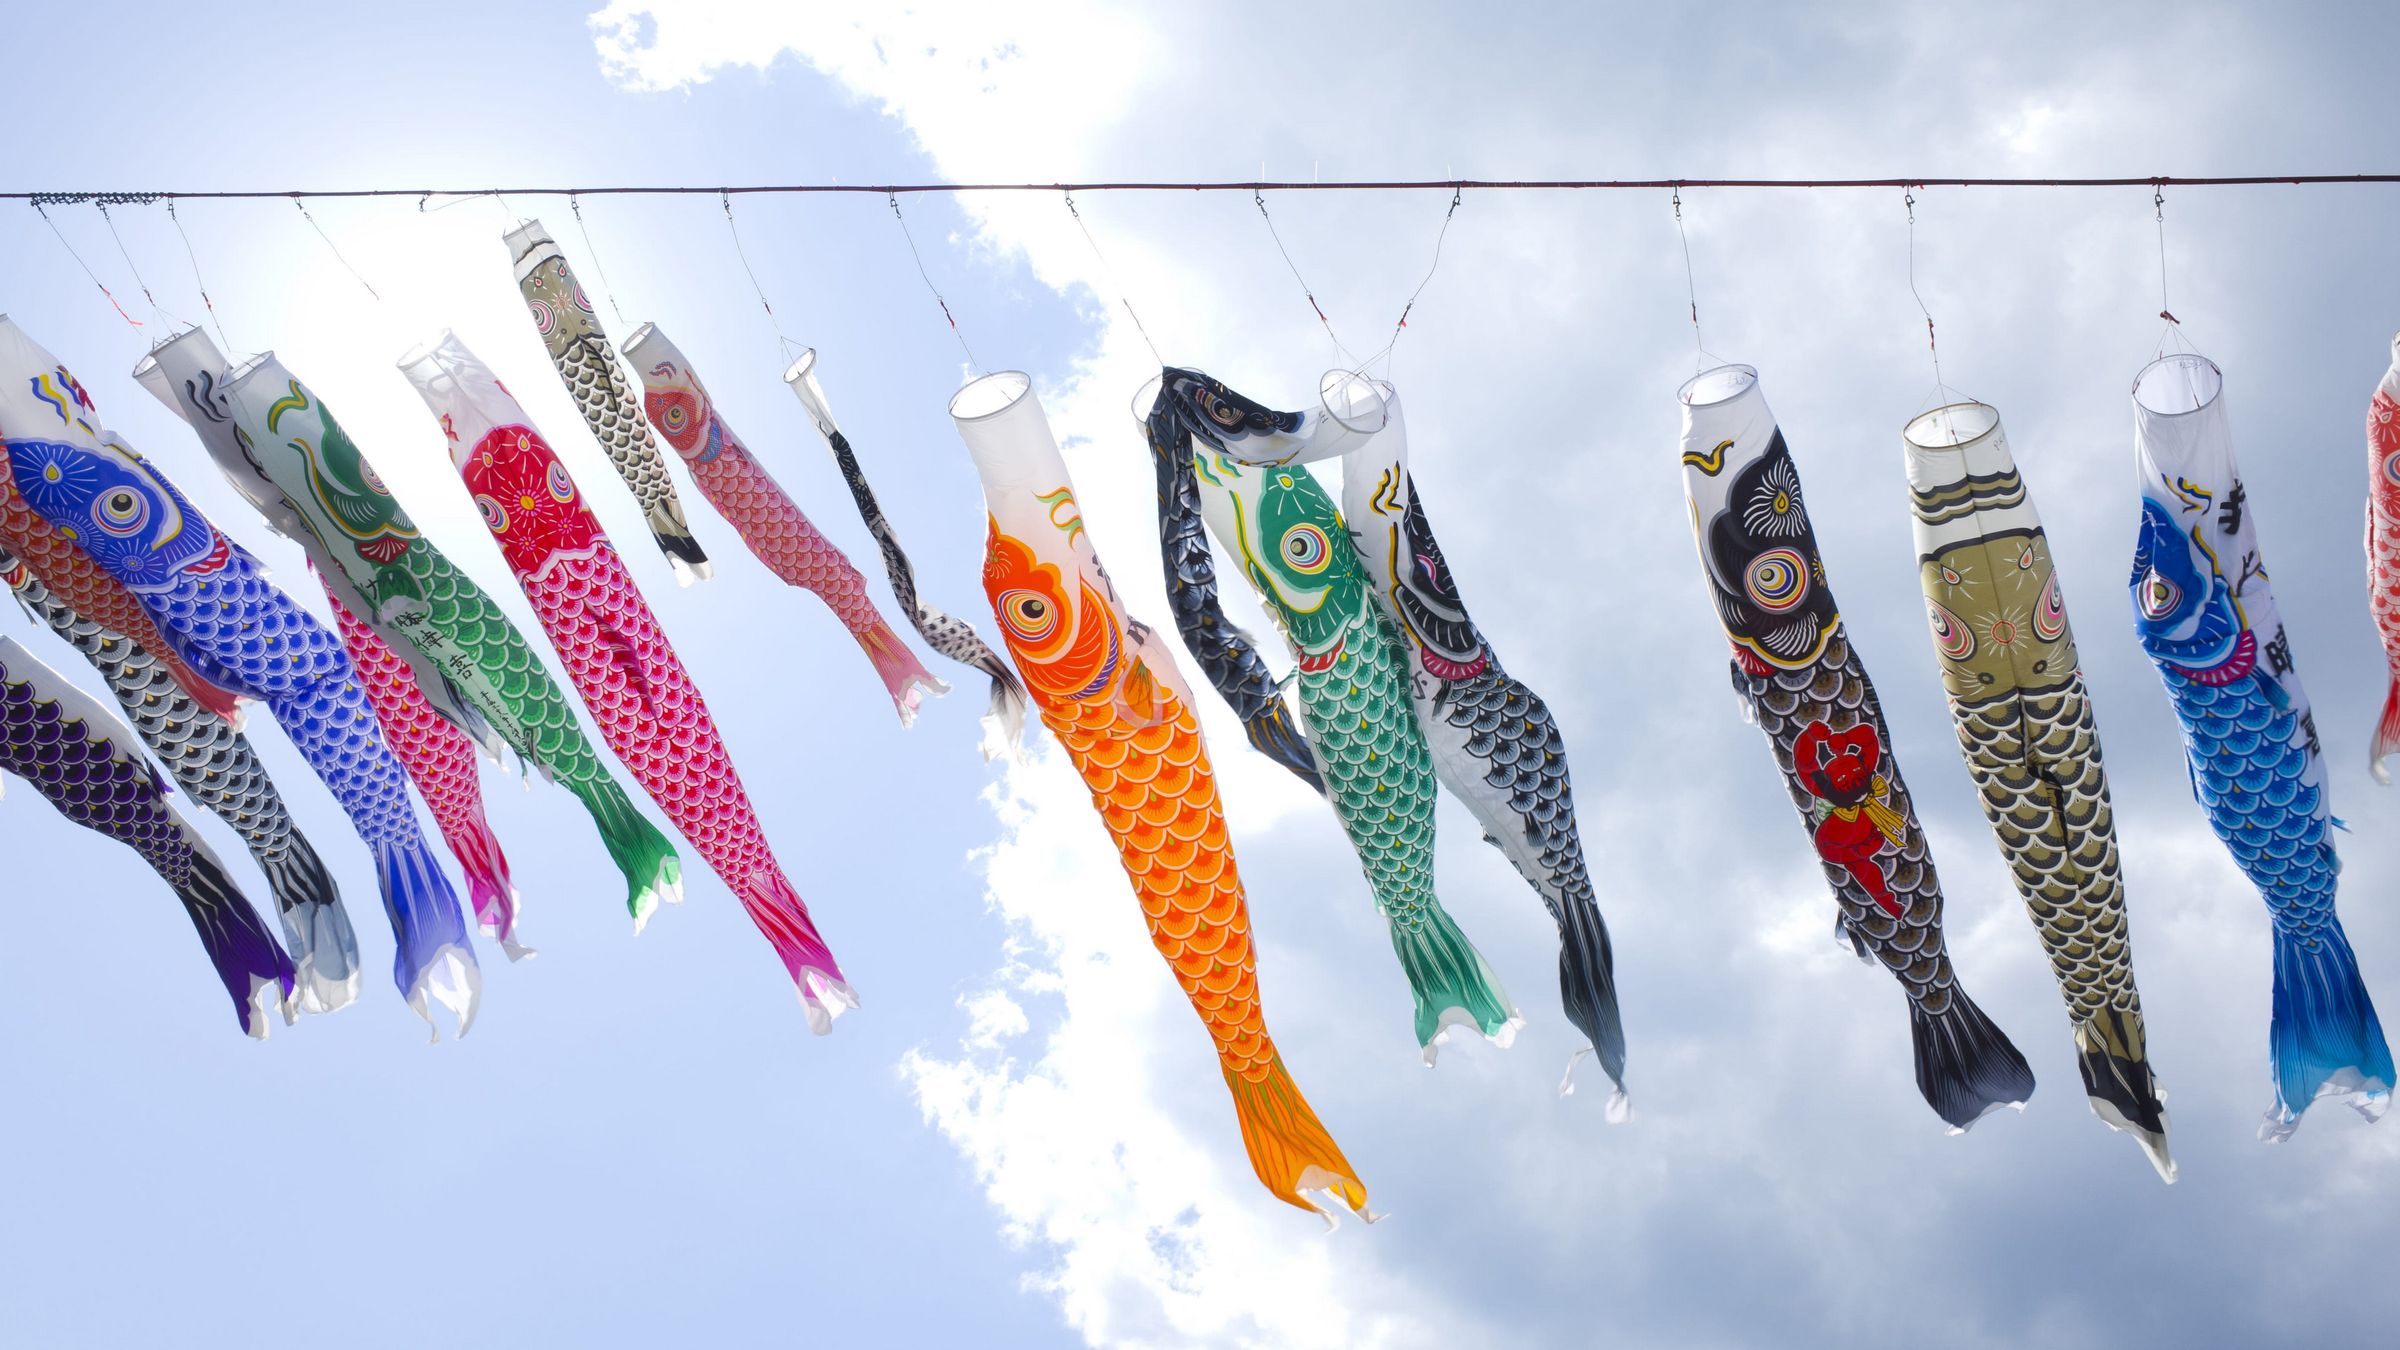 江户时代的日本鲤鱼旗唯美风景桌面大图